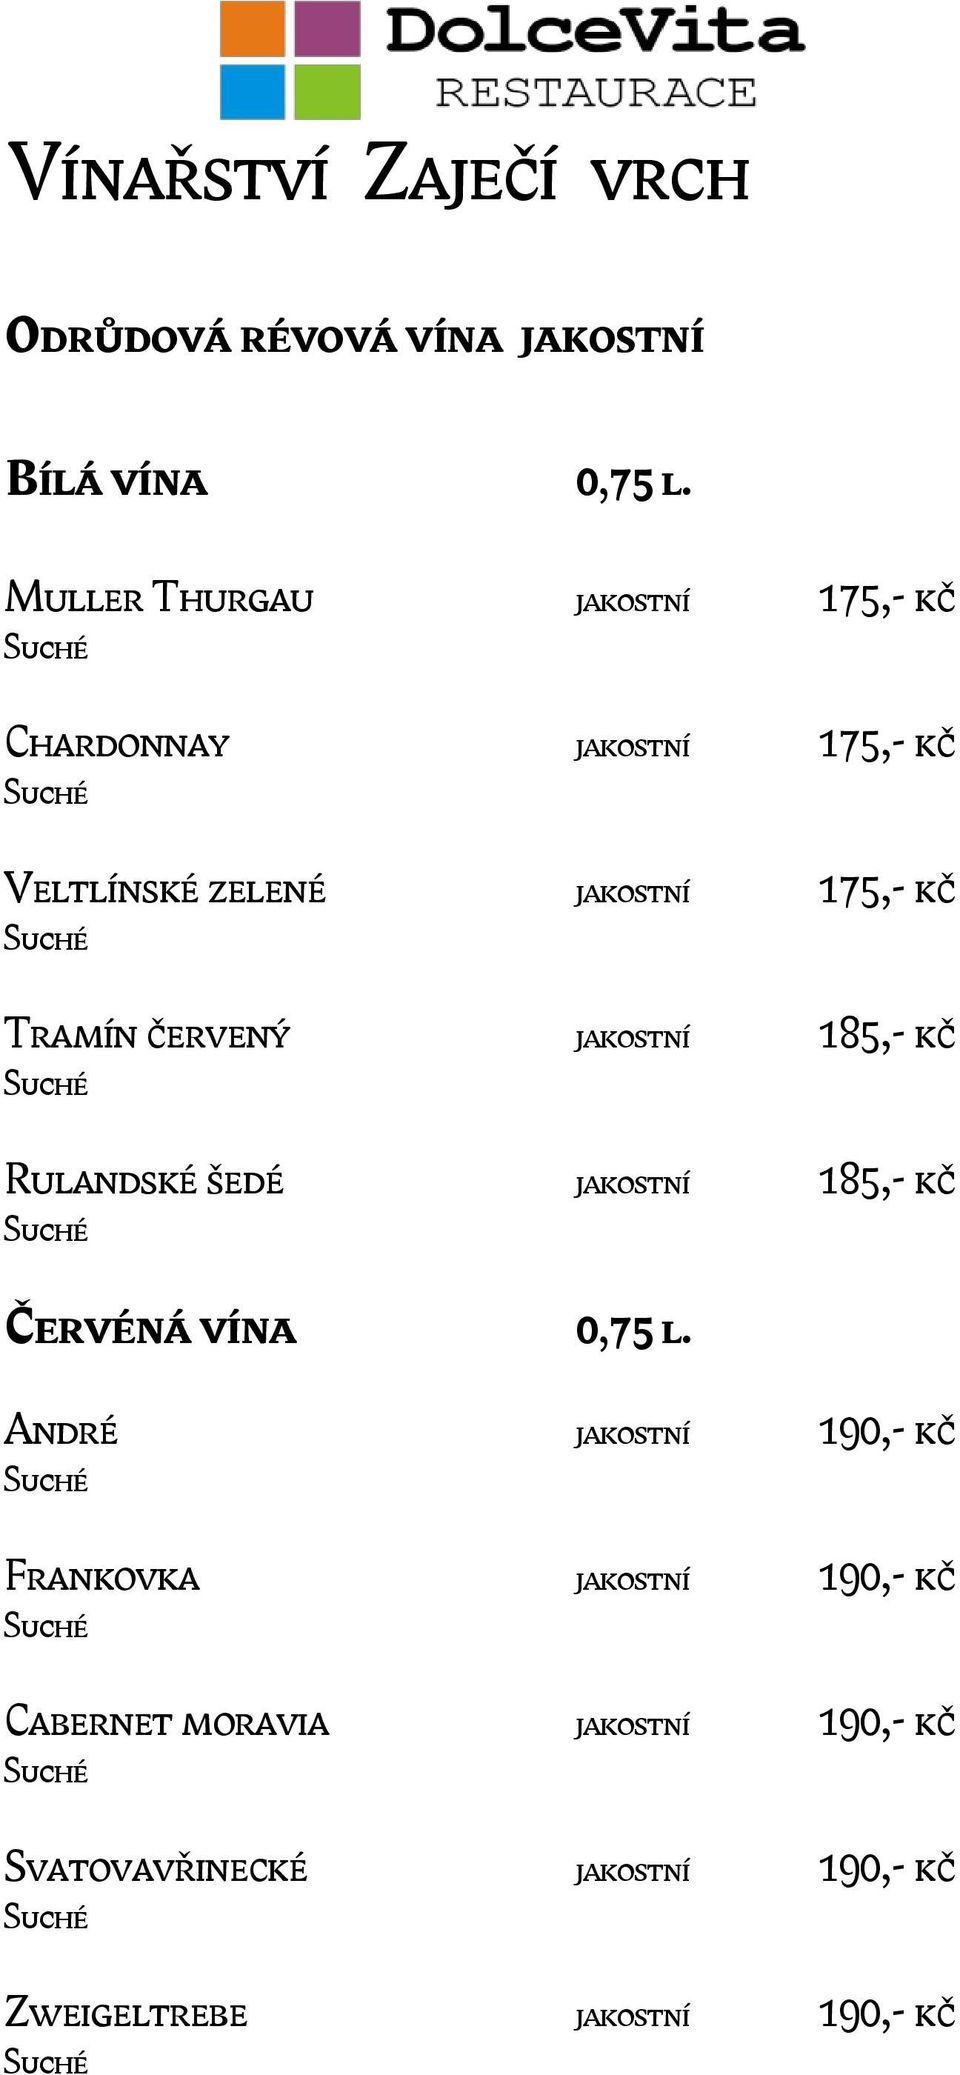 Tramín červený jakostní 185,- kč Rulandské šedé jakostní 185,- kč Červéná vína 0,75 l.